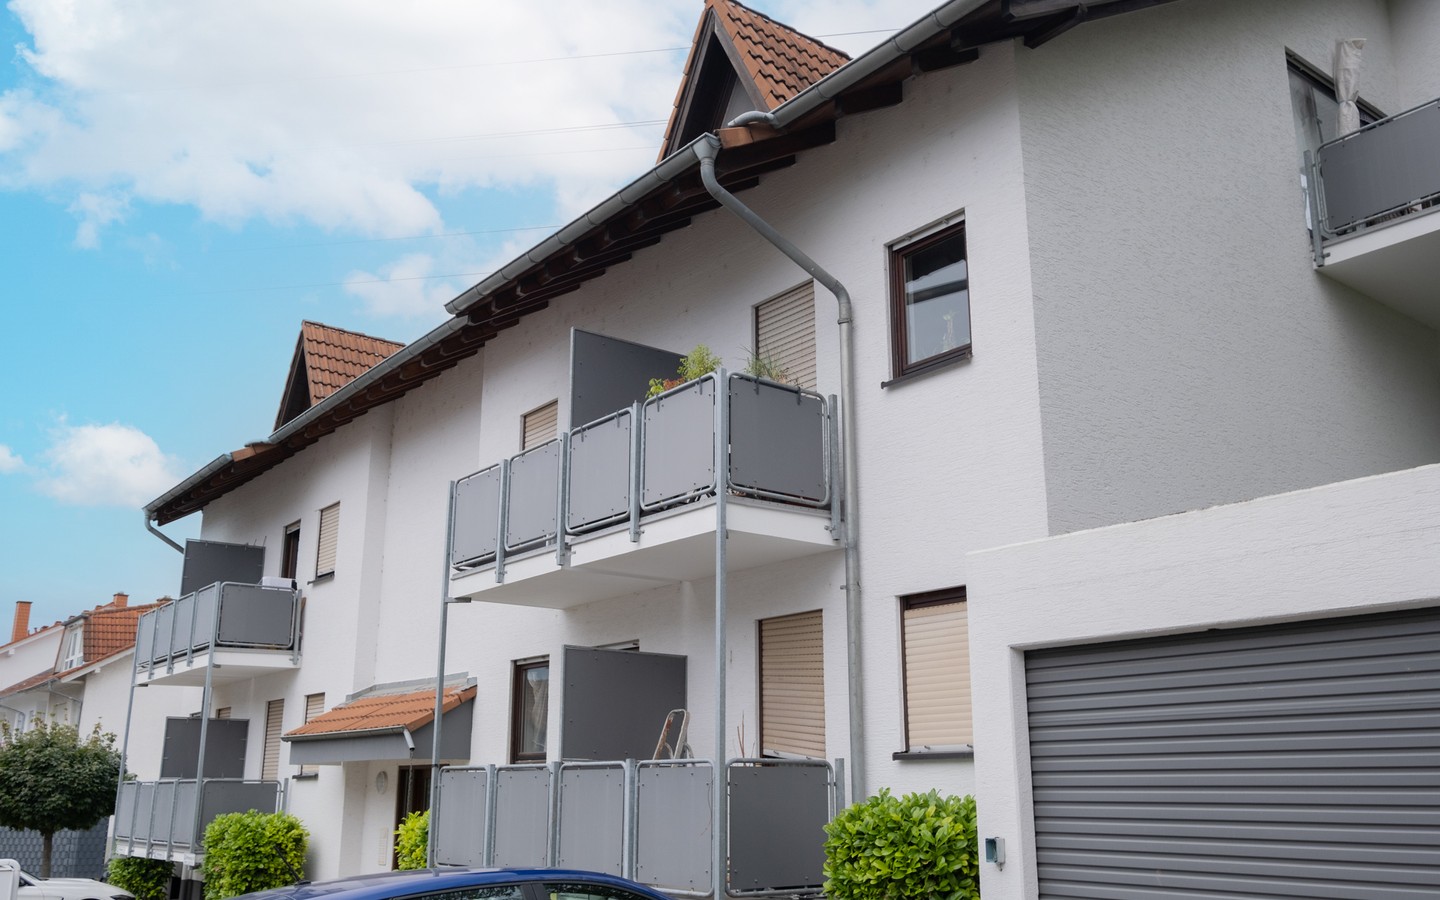 Ansicht - Neues Eigenheim oder neue Kapitalanlage: 2-Zimmer-Dachwohnung in Leimen - sofort bezugsfrei!